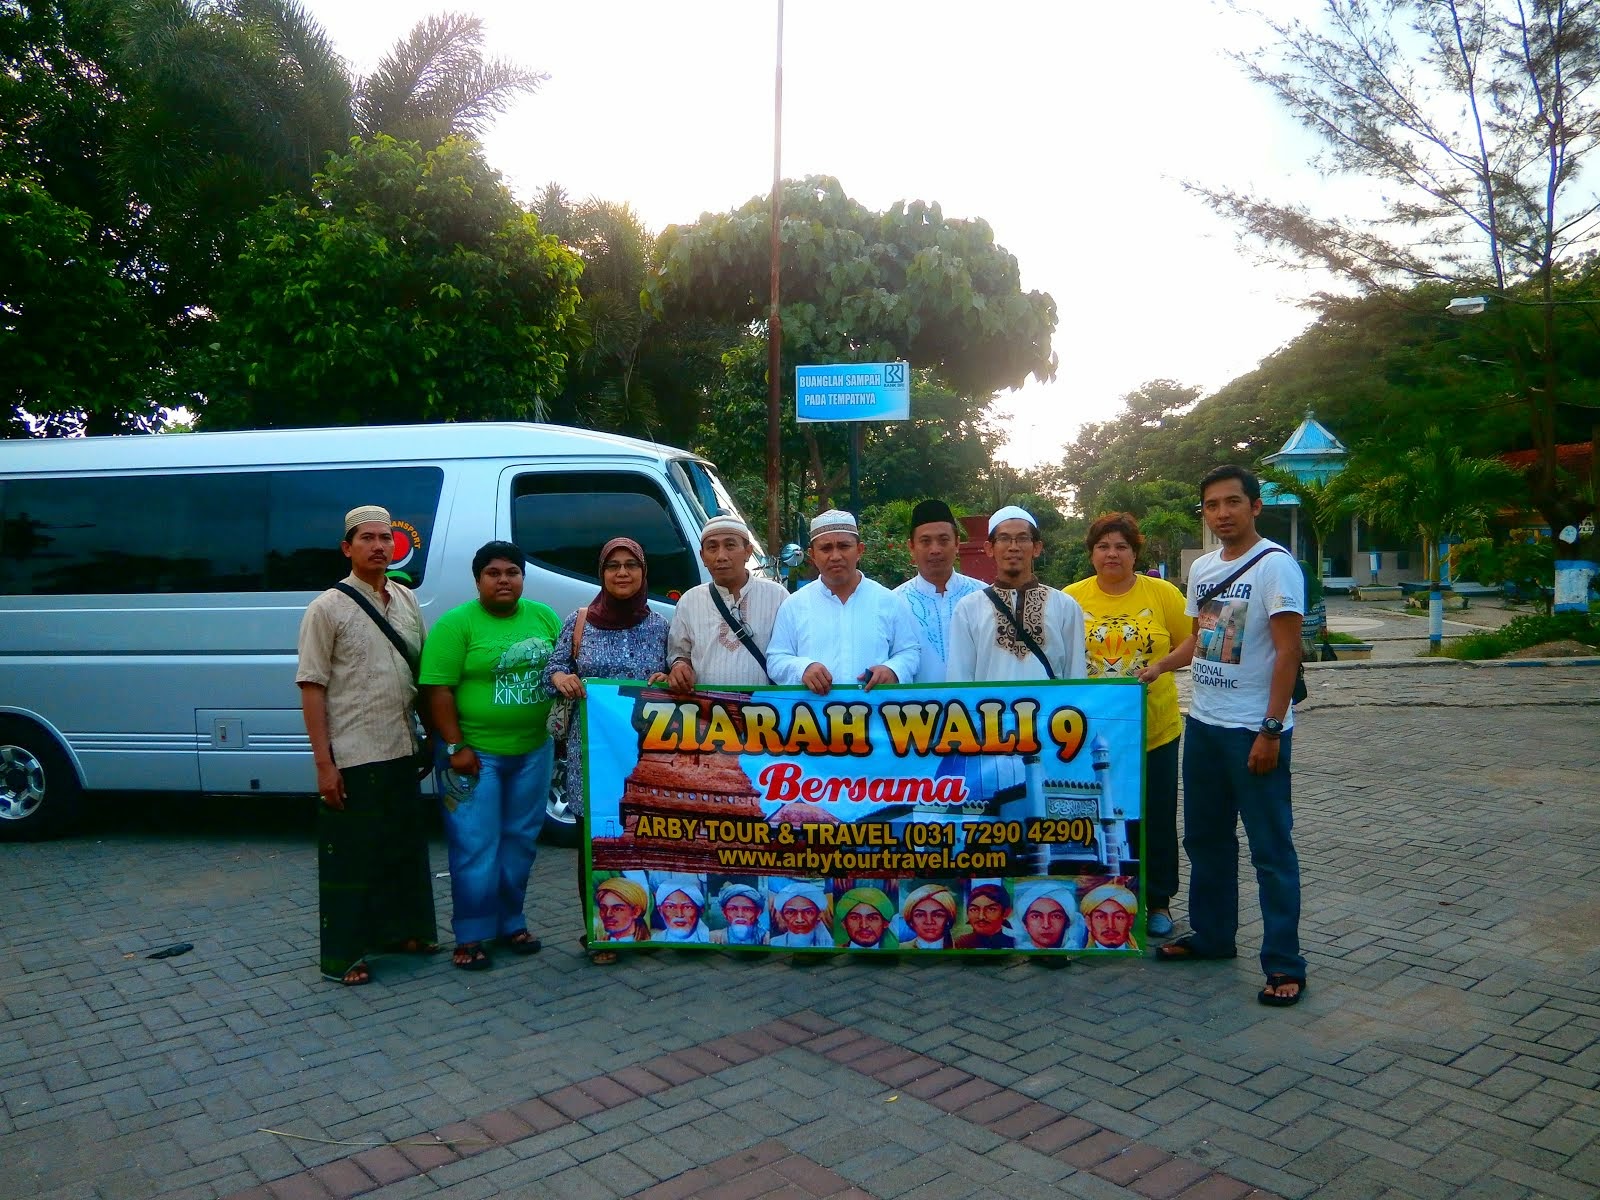 Ziarah Wali 9 sampai Jakarta 5 hari 4 malam